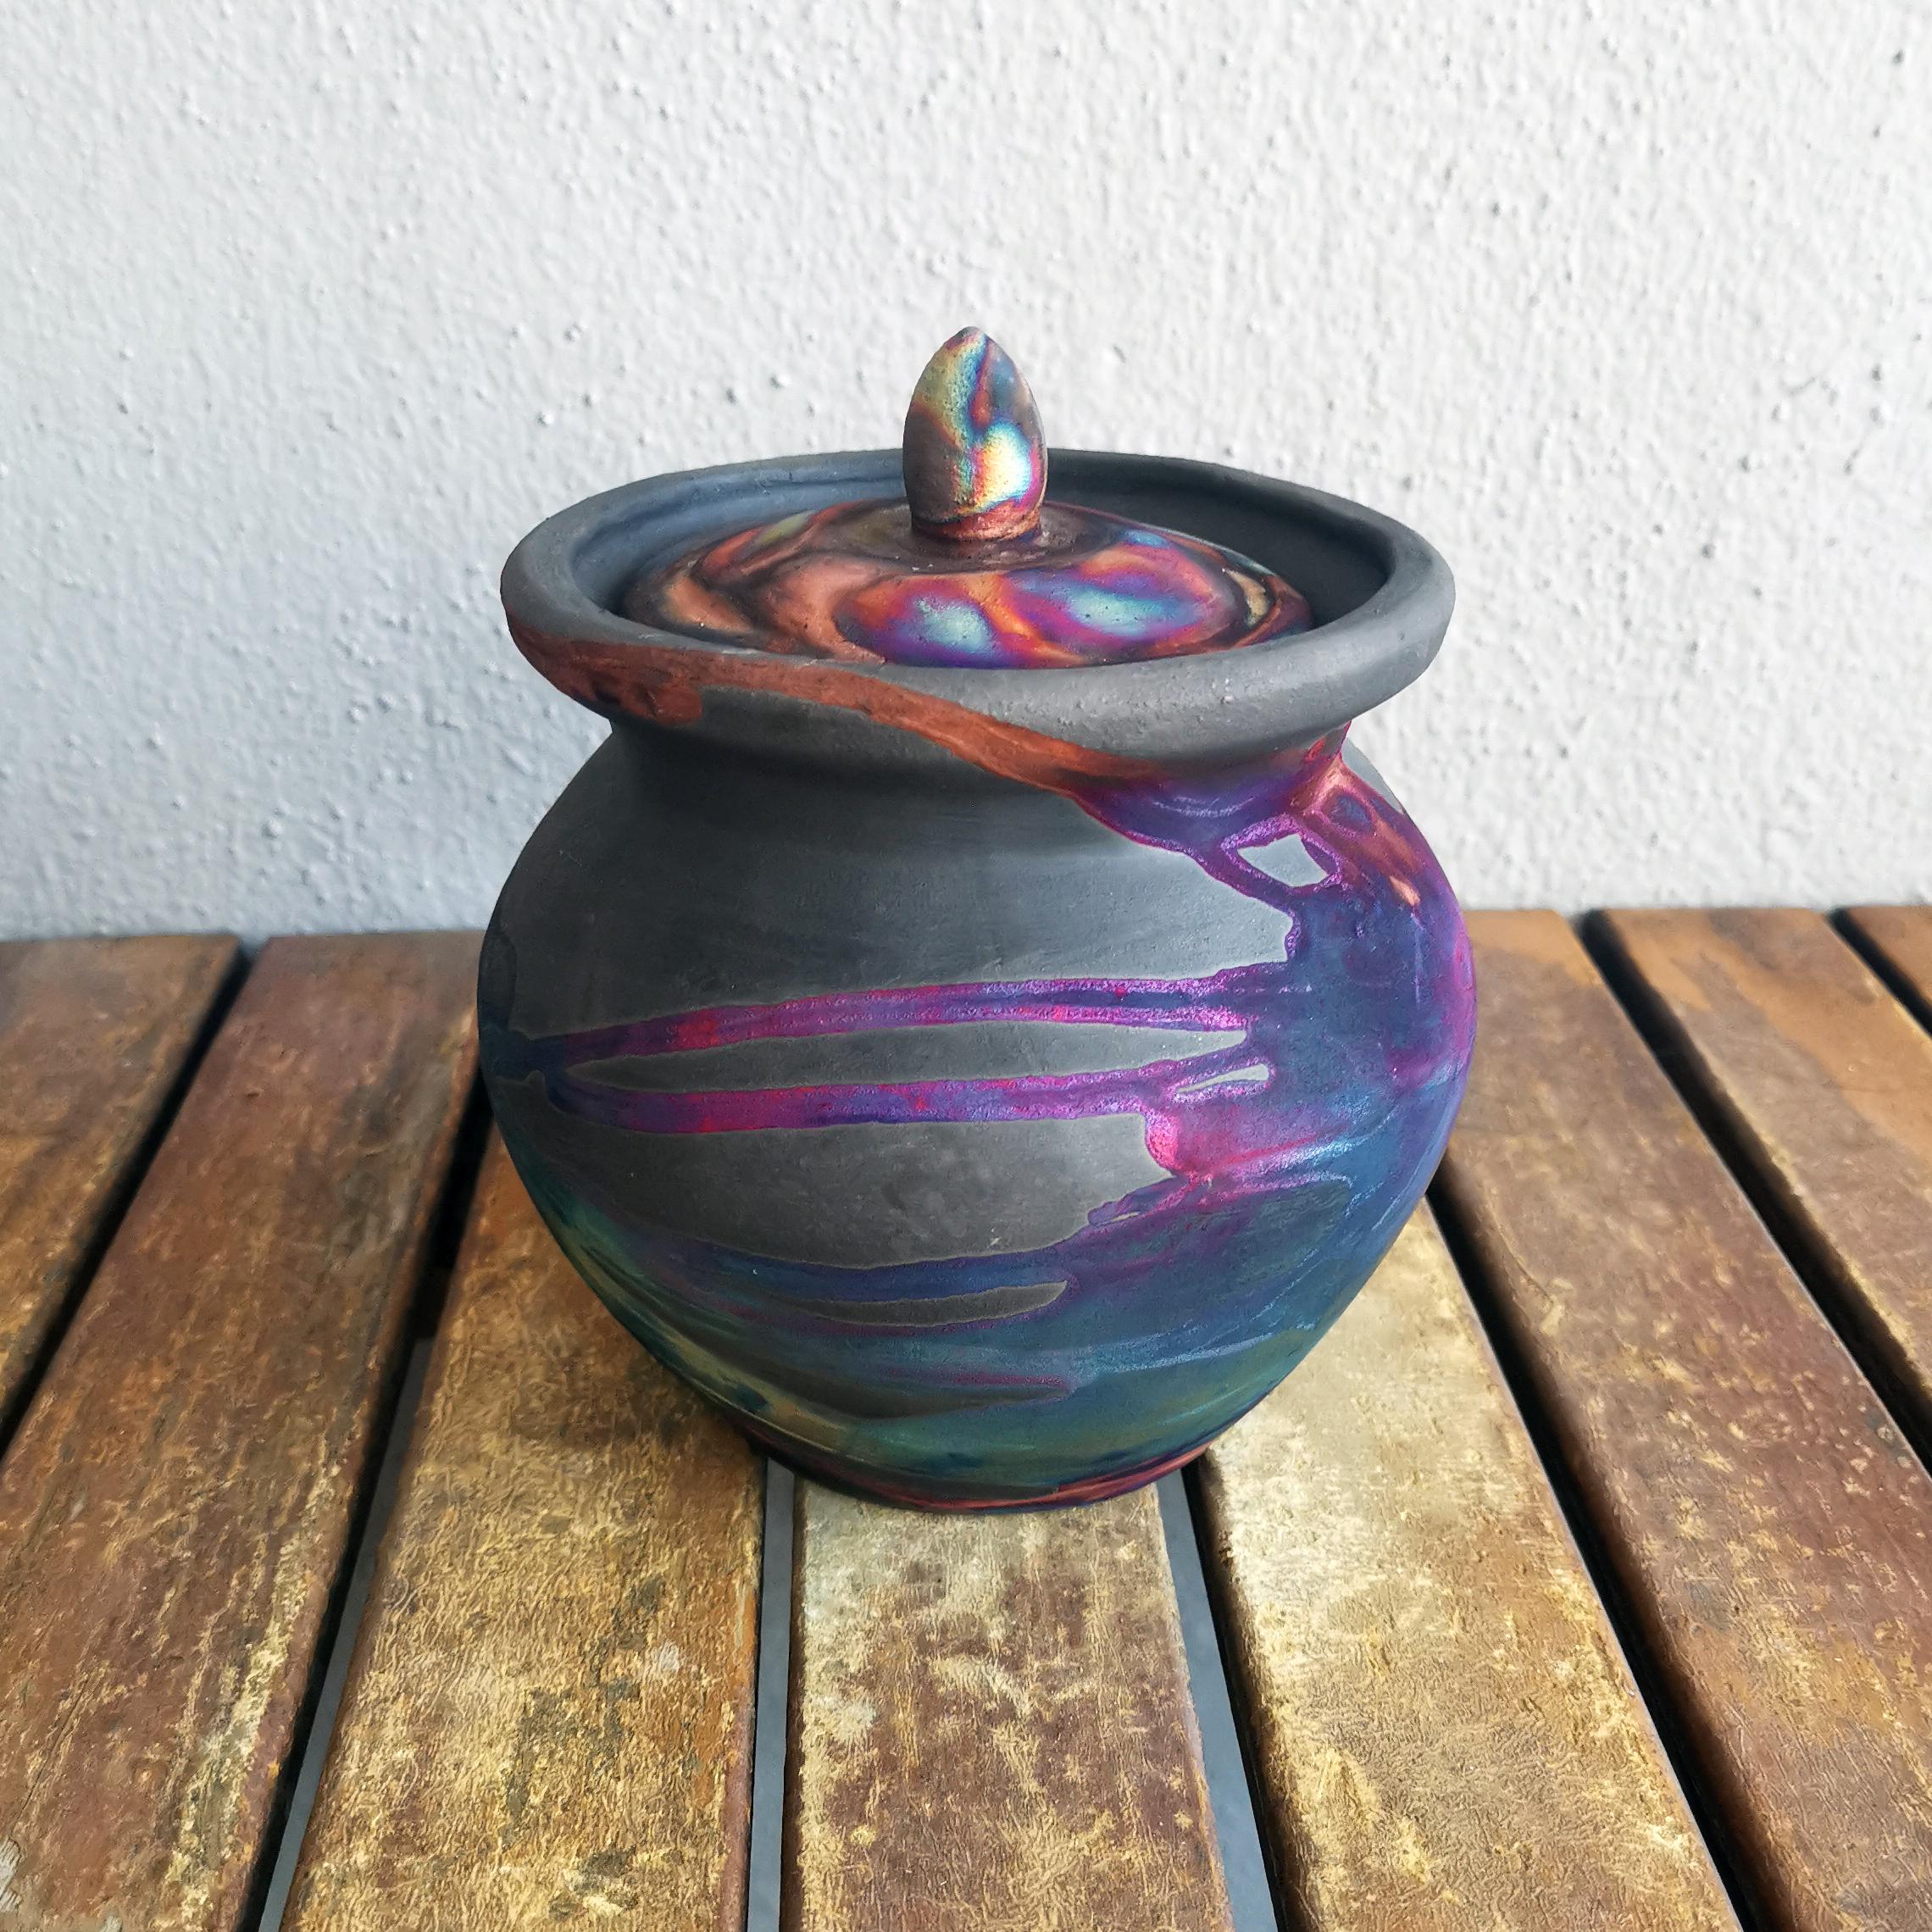 Heiwa - Frieden

Unsere Heiwa-Urne ist eine mittelgroße Urne mit einem einzigartigen Lippendesign, bei dem der Deckel in den Körper der Vase übergeht. Diese Urne hat einen abgerundeten Knopfdeckelhalter und kann dauerhaft verschlossen werden.

Höhe: